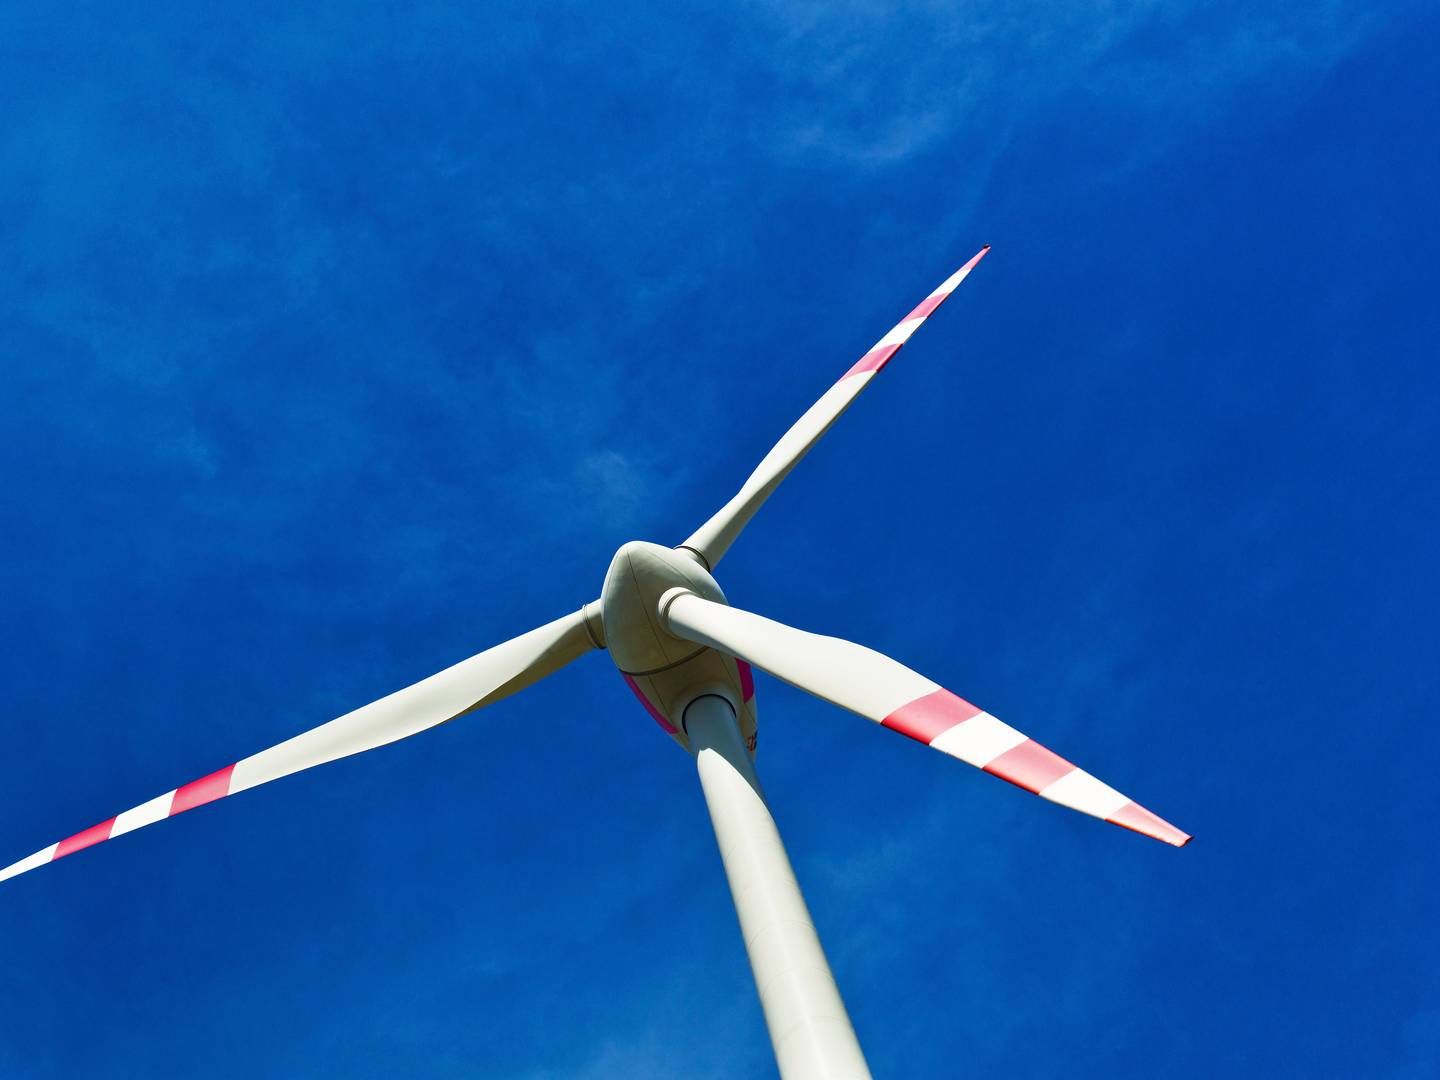 NÆRVIND: En 26 meter høy vindturbin forventes å kunne produsere 100 MWh strøm til det lokale drivhuset hvert år. | Foto: Colourbox